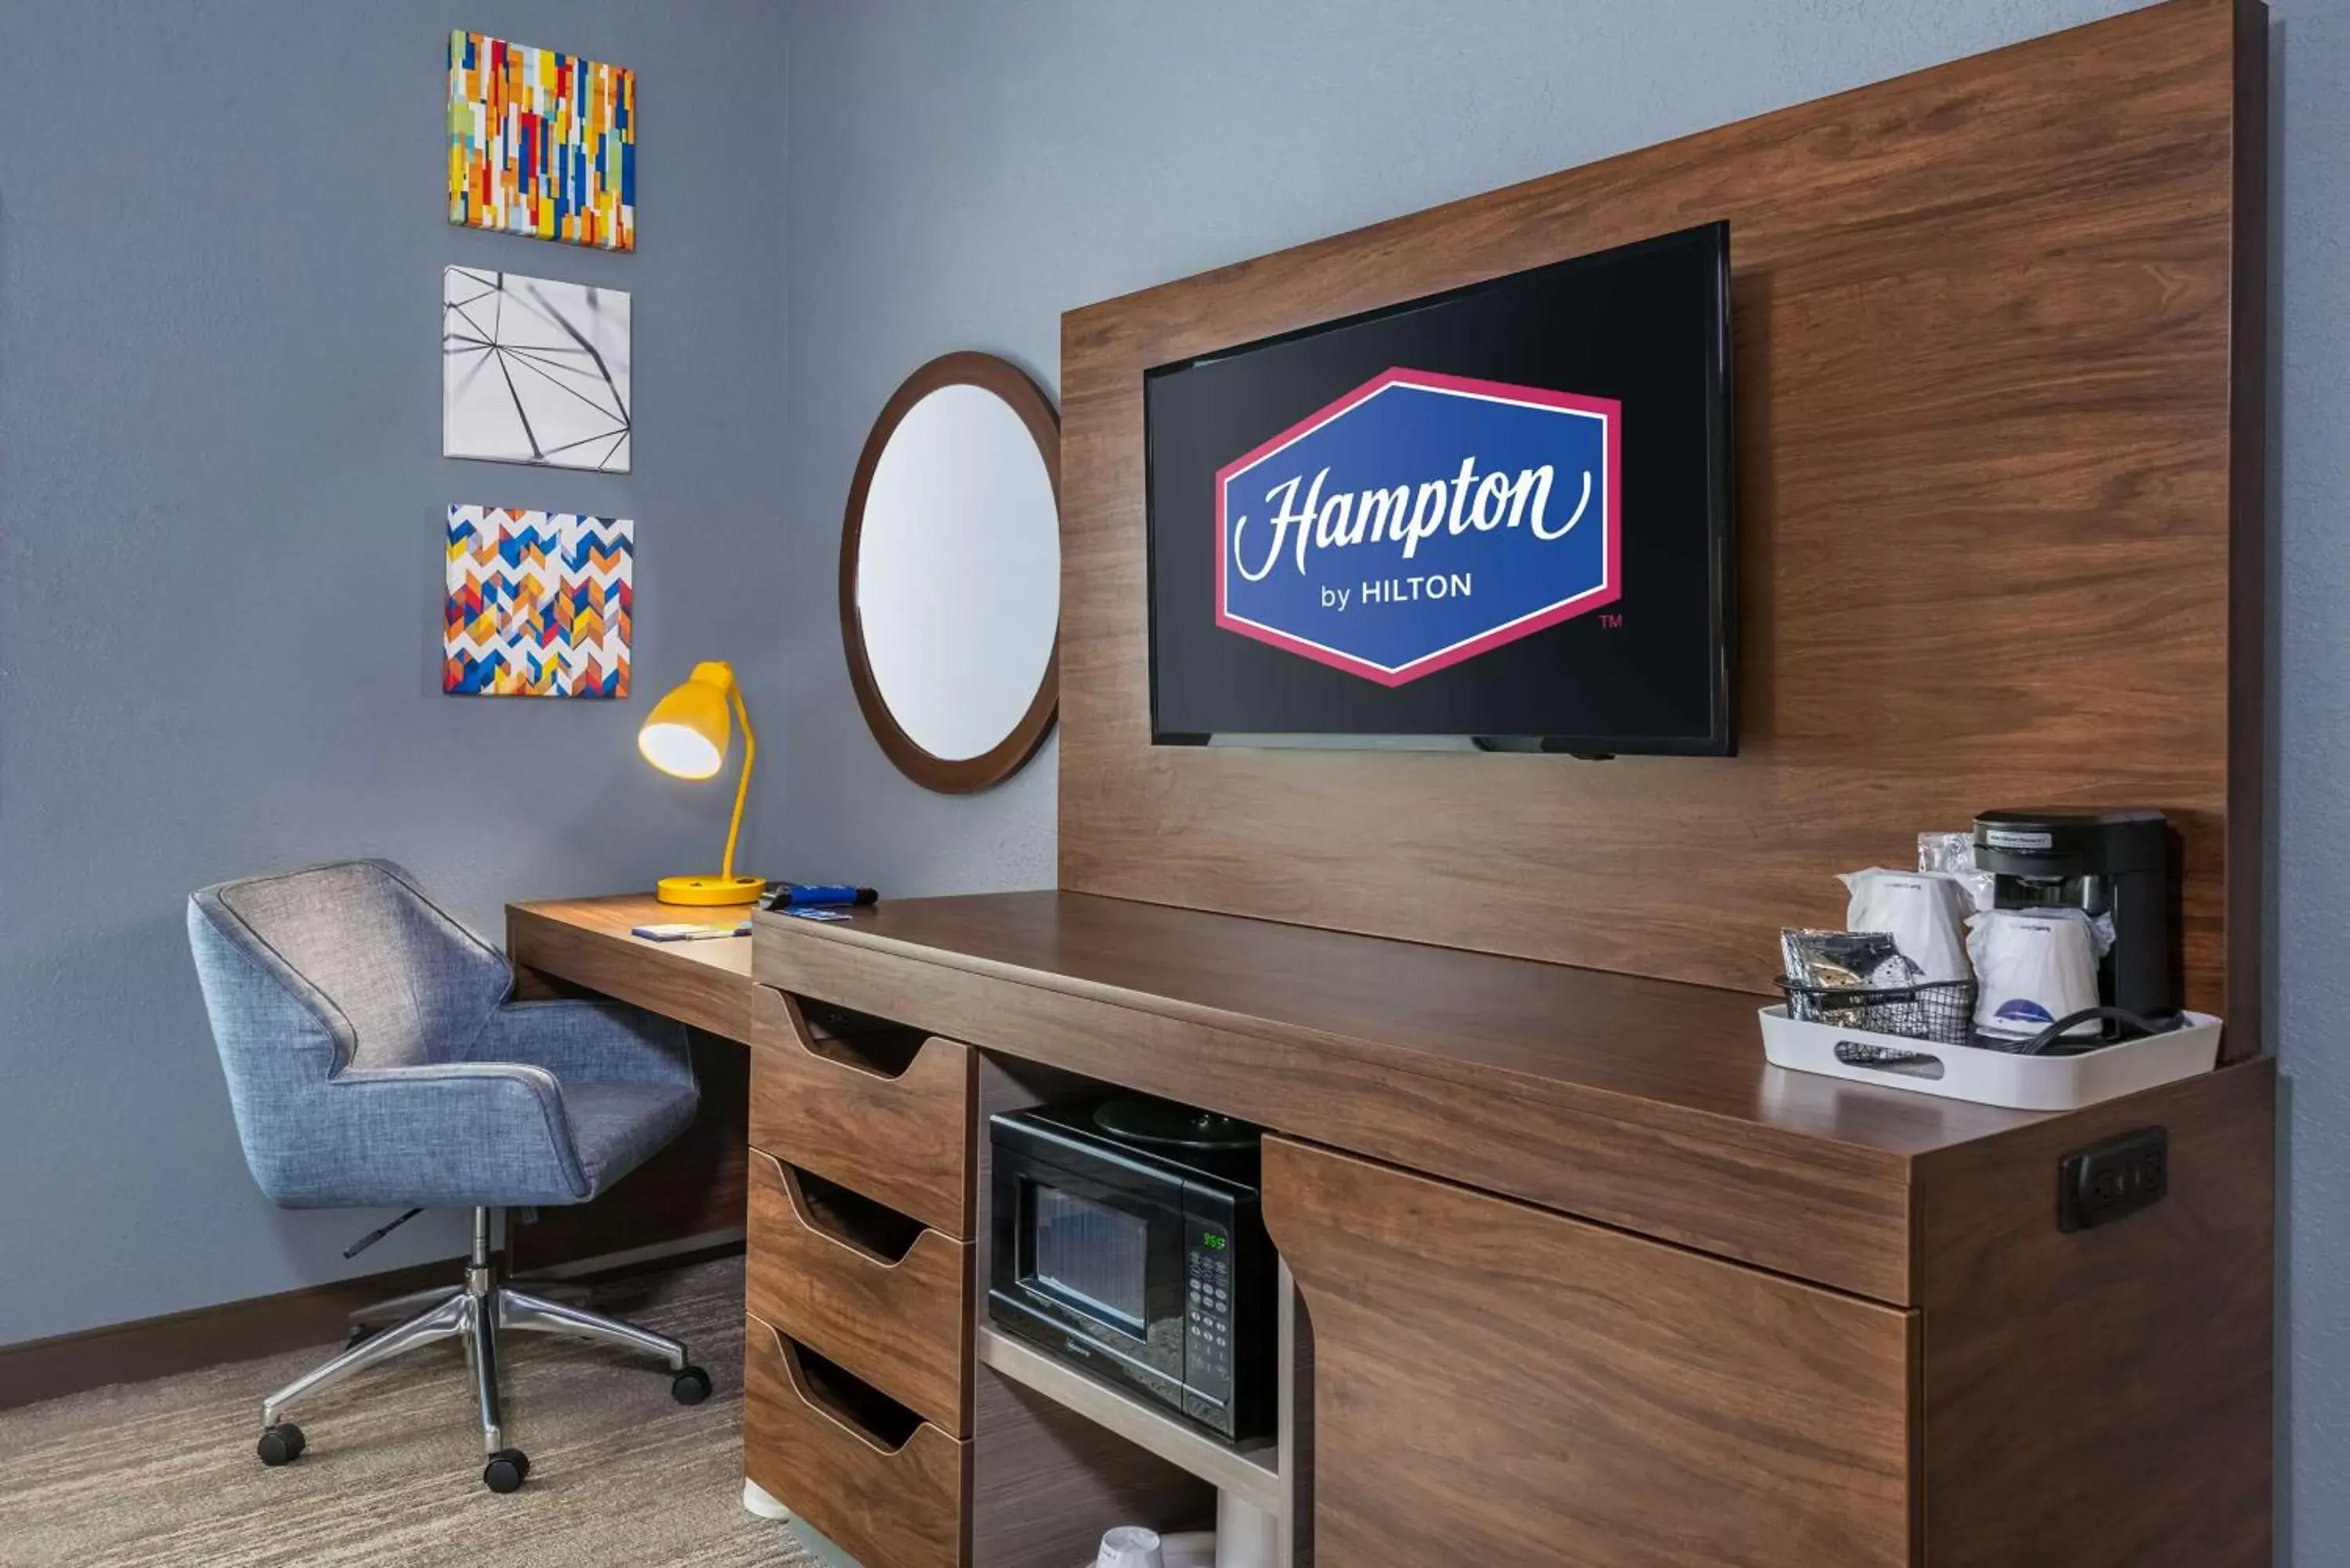 Bedroom in Hampton Inn & Suites Hopkinsville